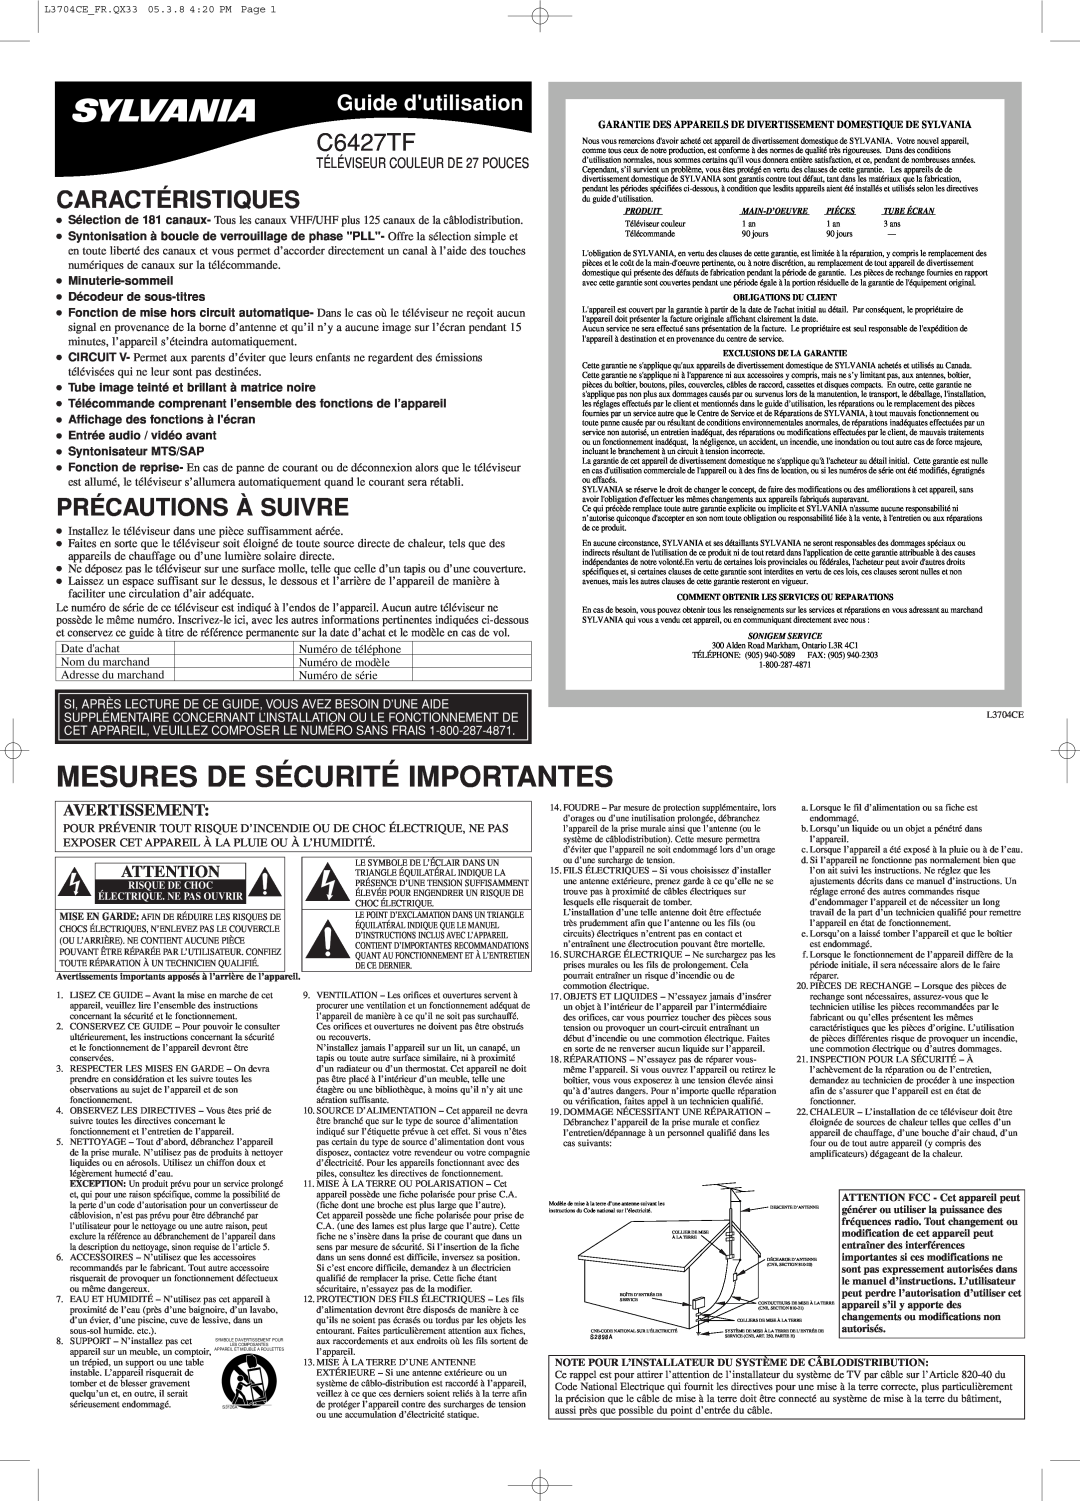 Sylvania C6427TF owner manual Mesures De Sécurité Importantes, Caractéristiques, Précautions À Suivre, Guide dutilisation 